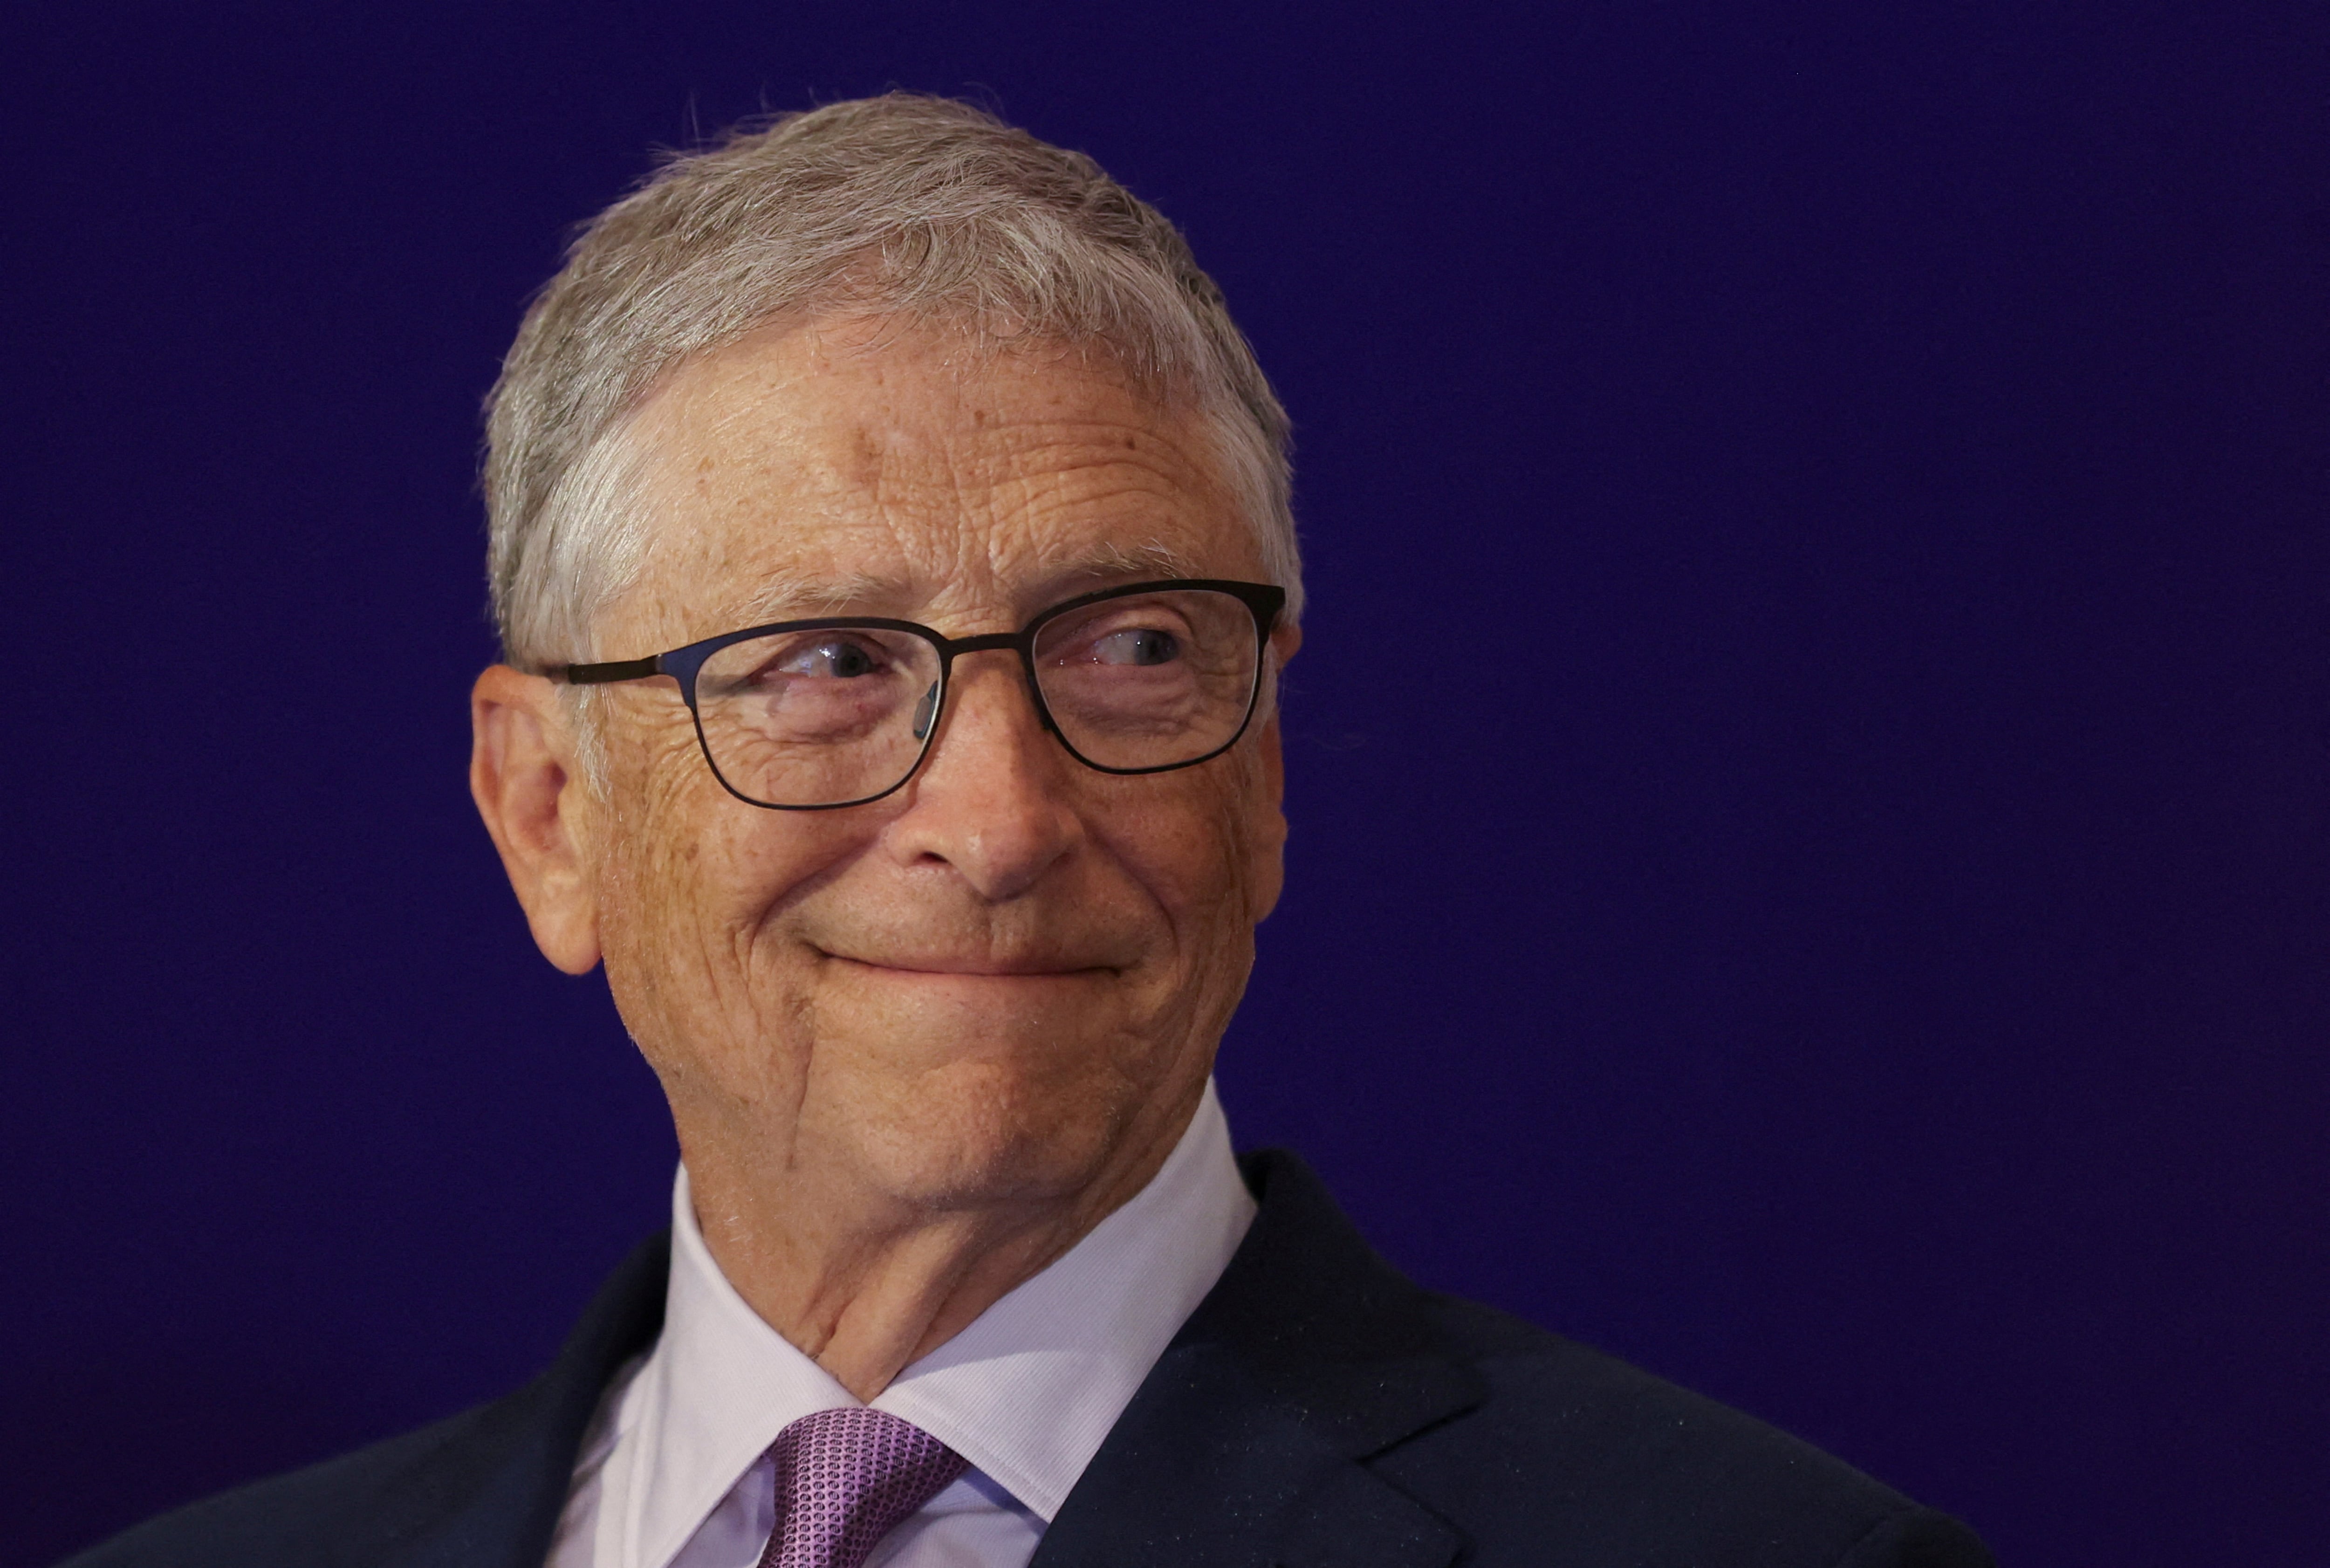 Bill Gates se involucra activamente en actividades filantrópicas relacionadas con la educación y el medio ambiente. REUTERS/Anushree Fadnavis/File Photo